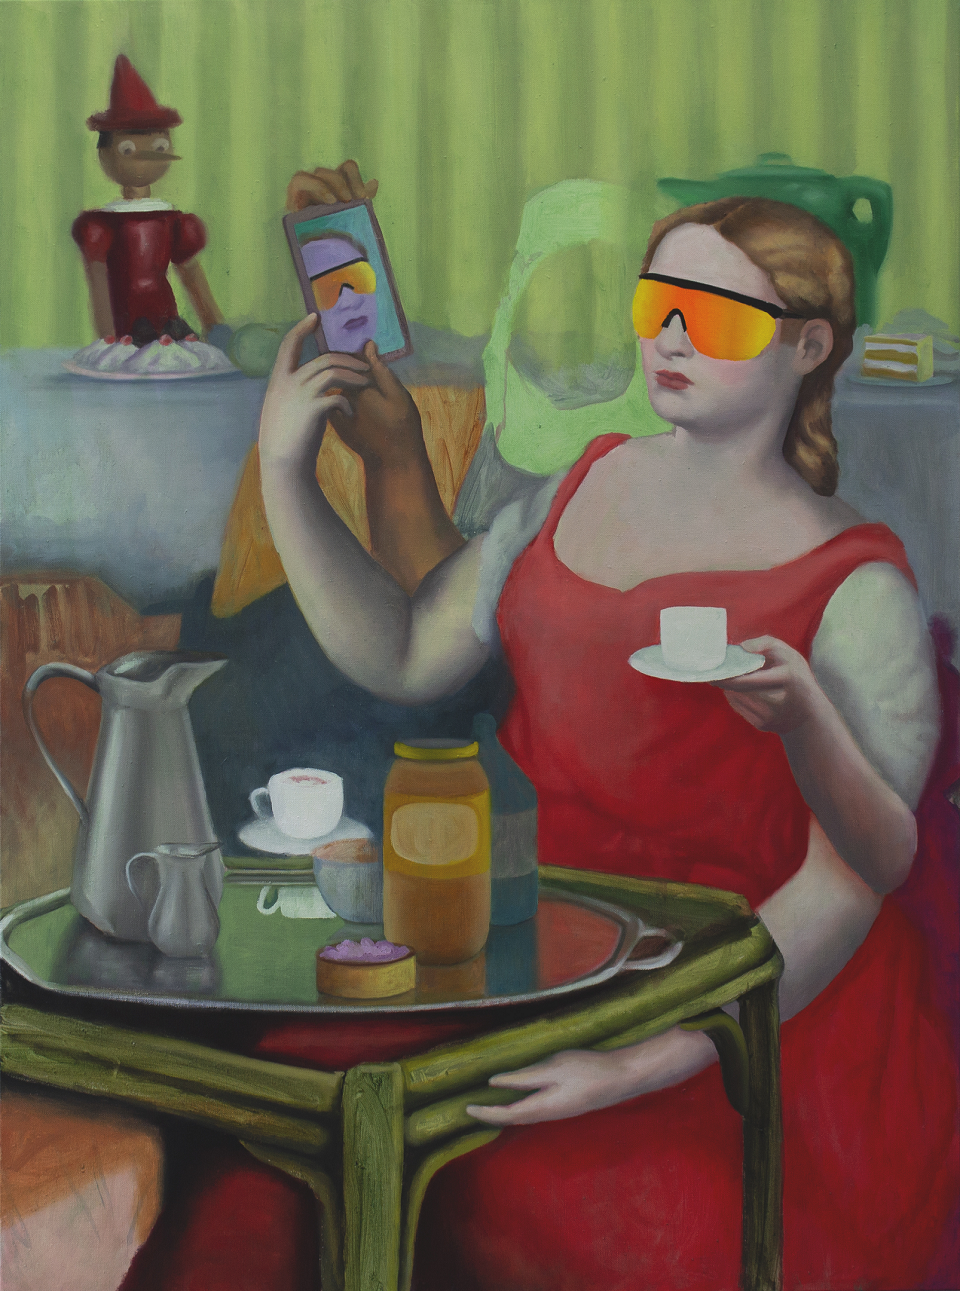 Zohar Fraiman: See Believe Produce, Öl auf Leinwand, 135 x 100 Zentimeter, 2021 - Das Bild zeigt eine Frau im roten Kleid mit verspiegelter Sonnenbrille  an einem gedeckten Kaffeetisch. Sie hat fünf Arme und hält sowohl eine Kaffeetasse als auch ein Mobiltelefon. Im Hintergrund sitzt eine Pinocchio-Figur.